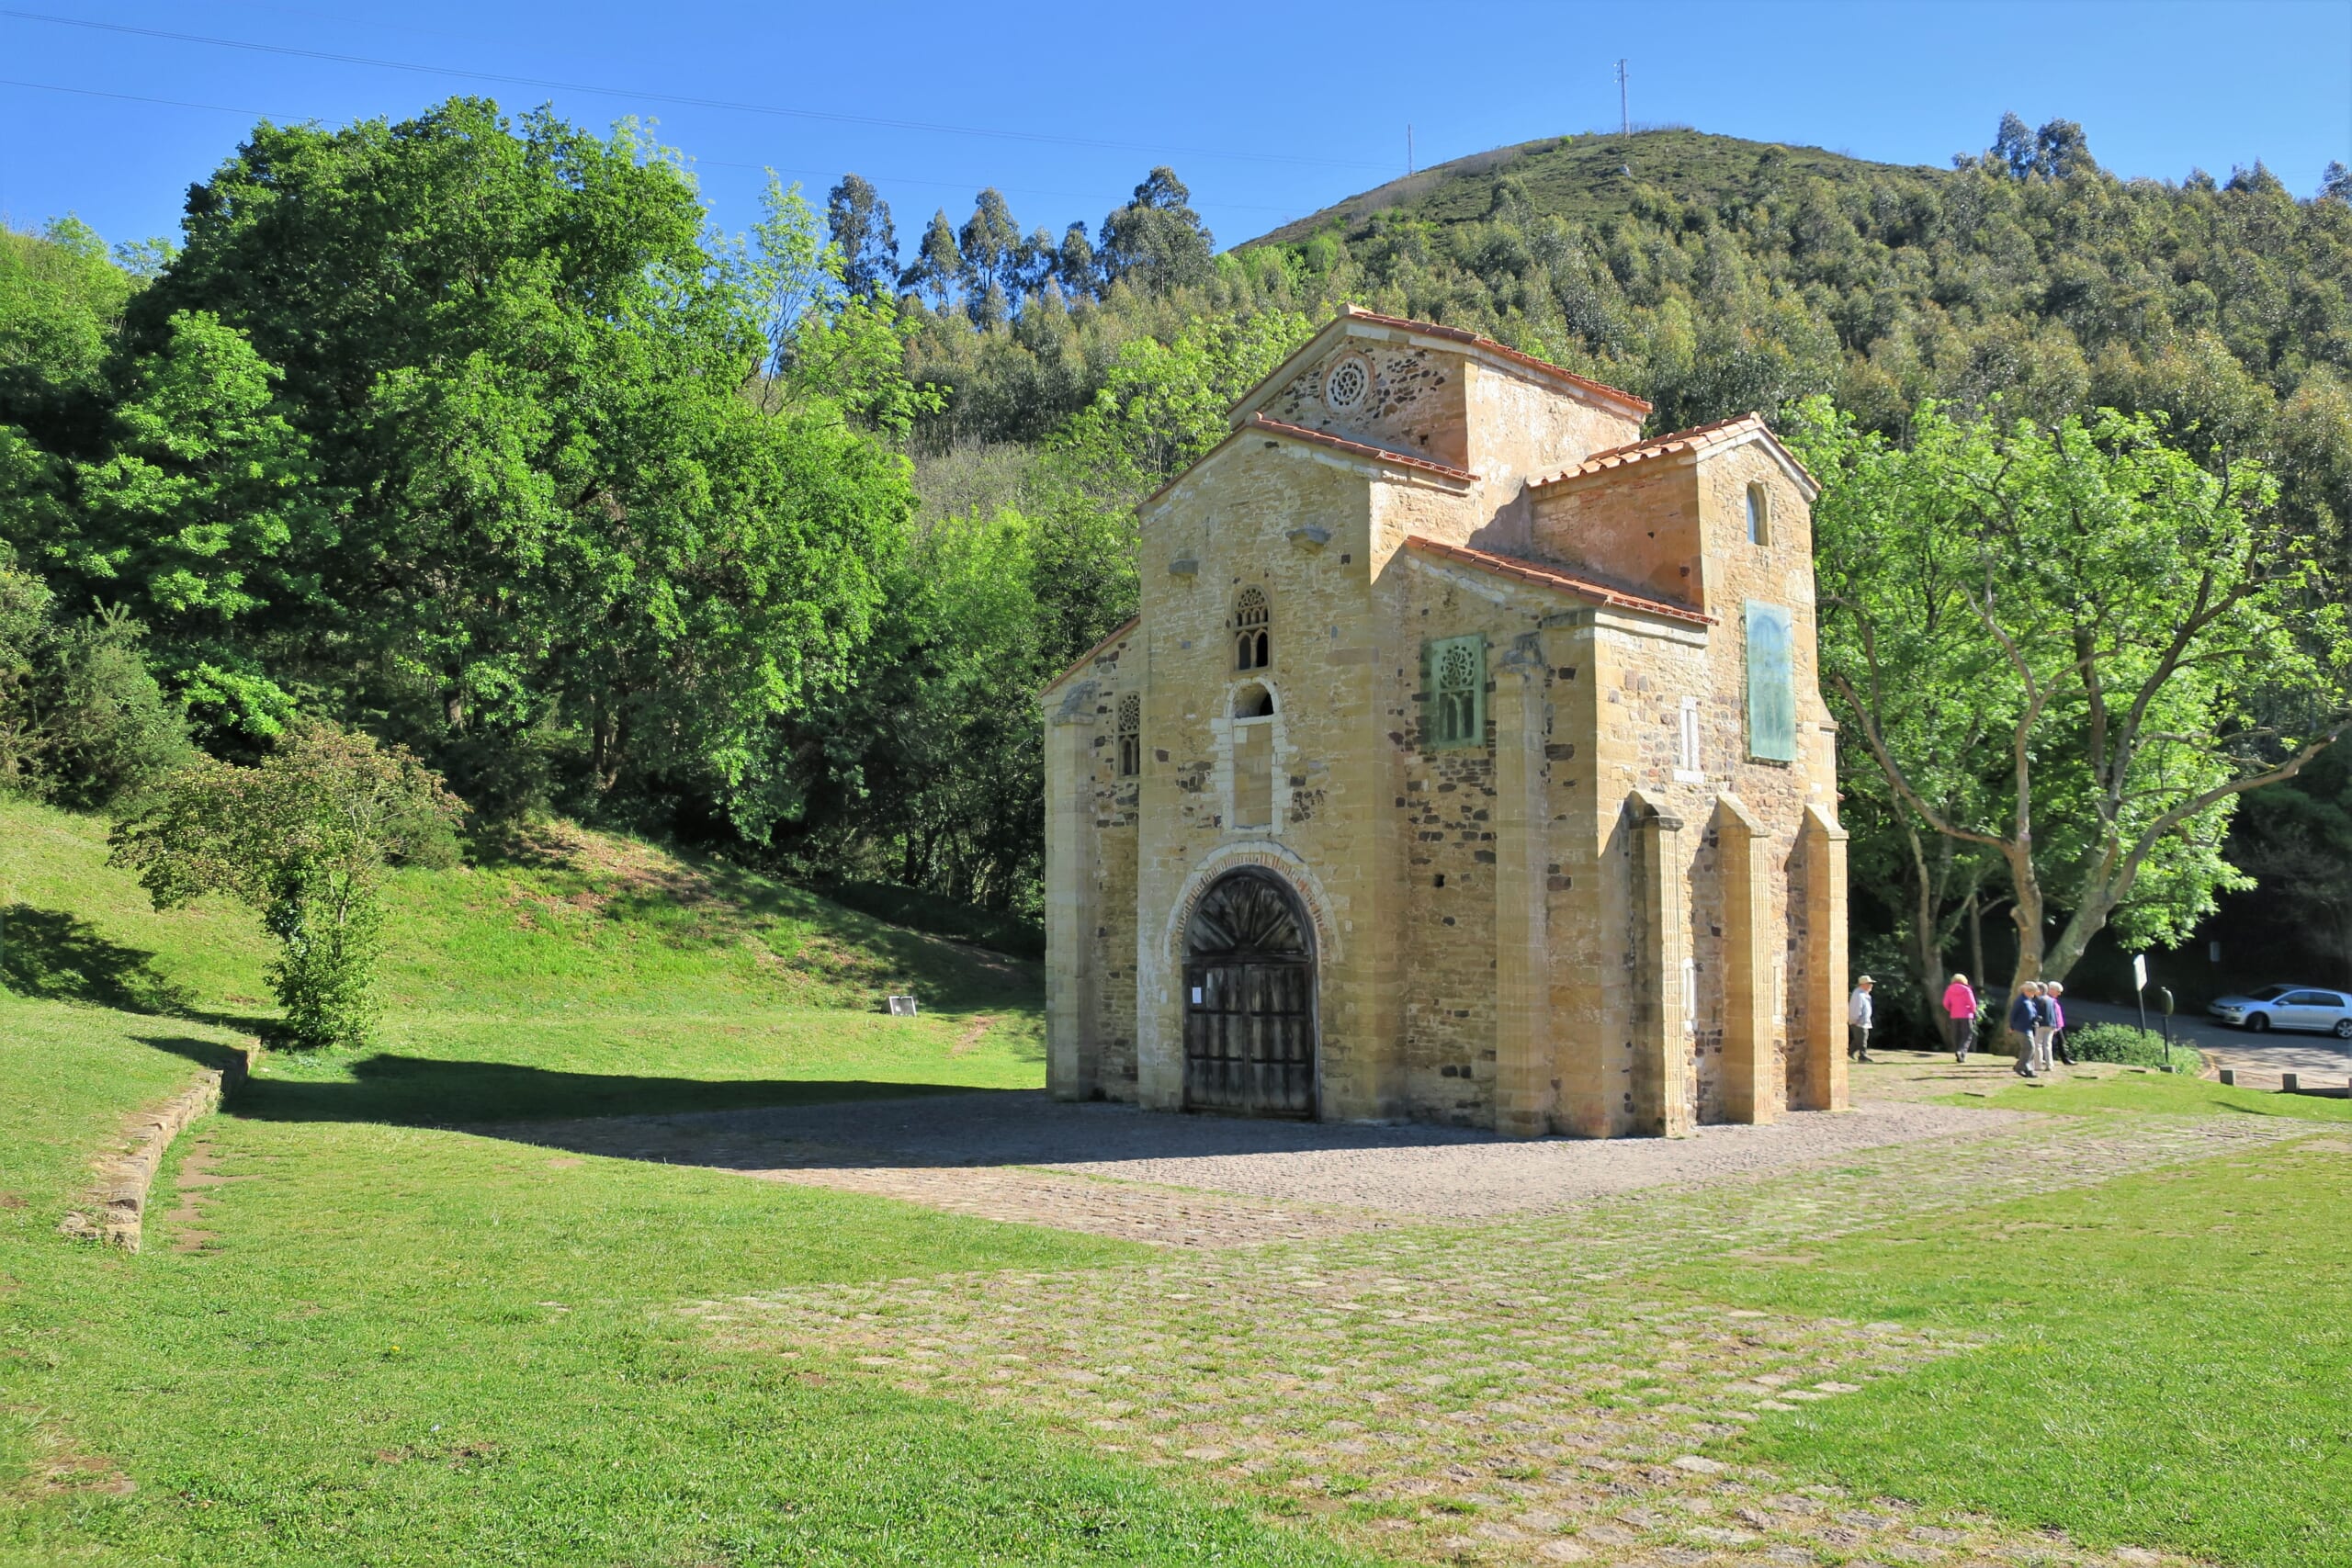 北スペインの観光スポットであるアストゥリアスのプレロマネスク建築